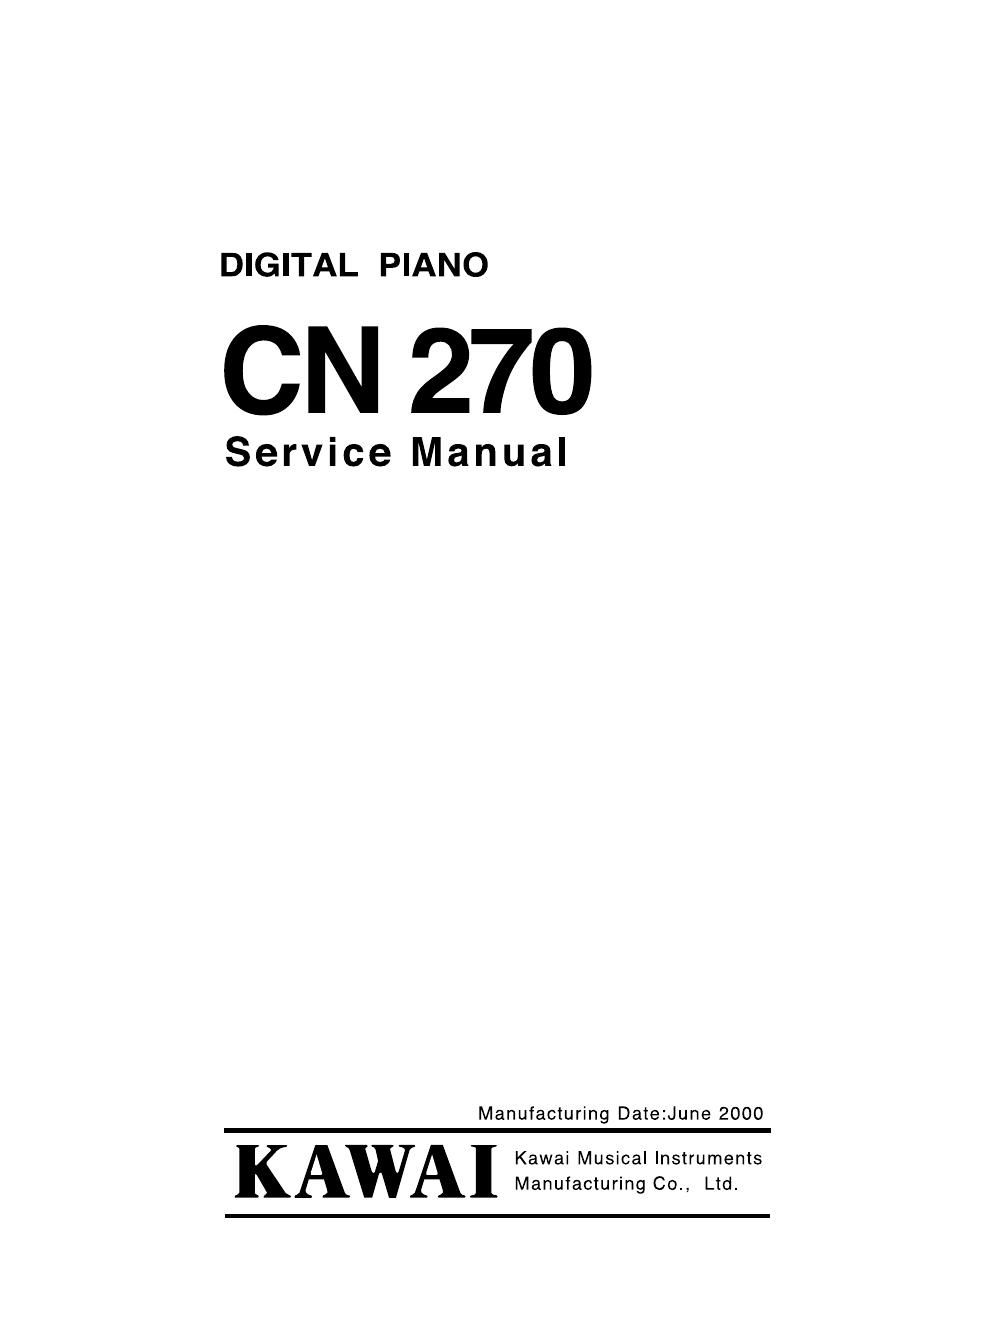 kawai cn 270 service manual